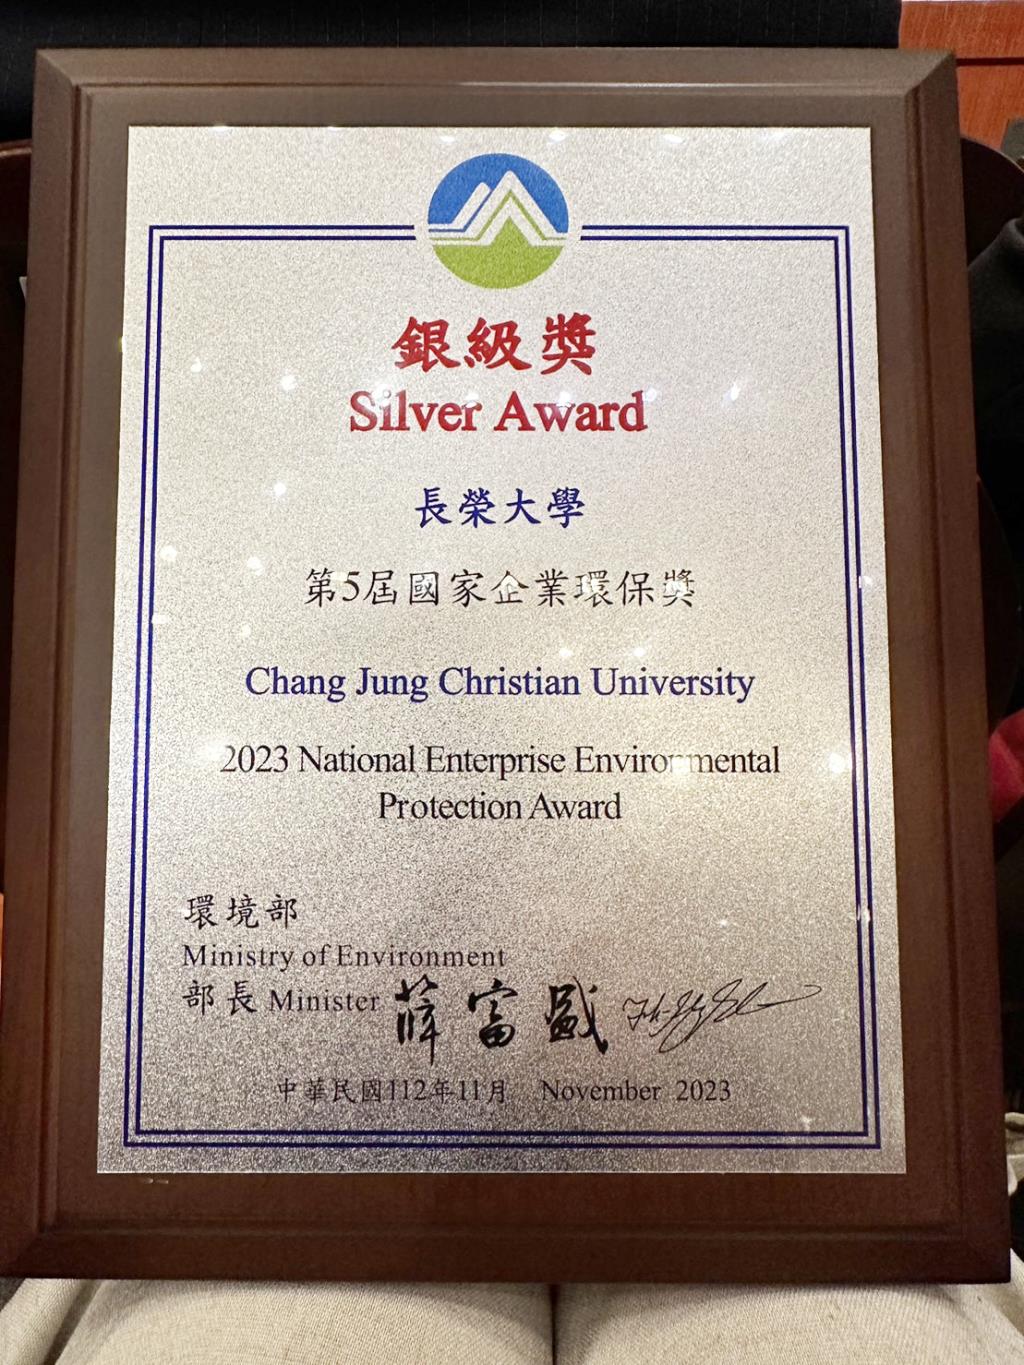 長榮大學榮獲第五屆國家企業環保獎非製造業組銀級獎